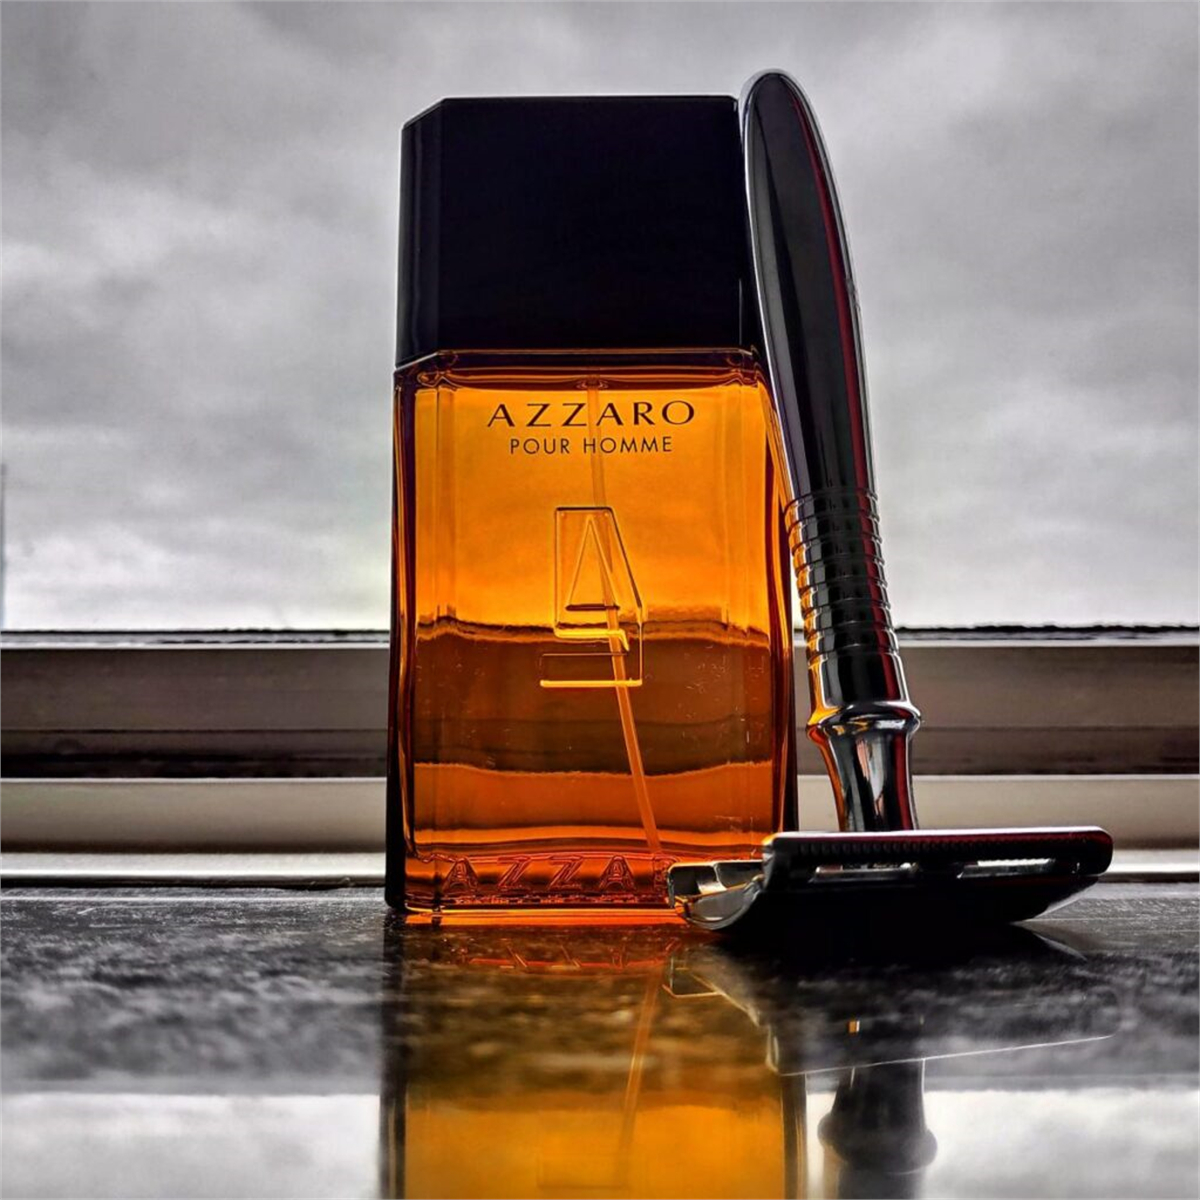 Nước hoa Azzaro -  Mỗi tầng hương đều vô cùng đặc biệt và hấp dẫn